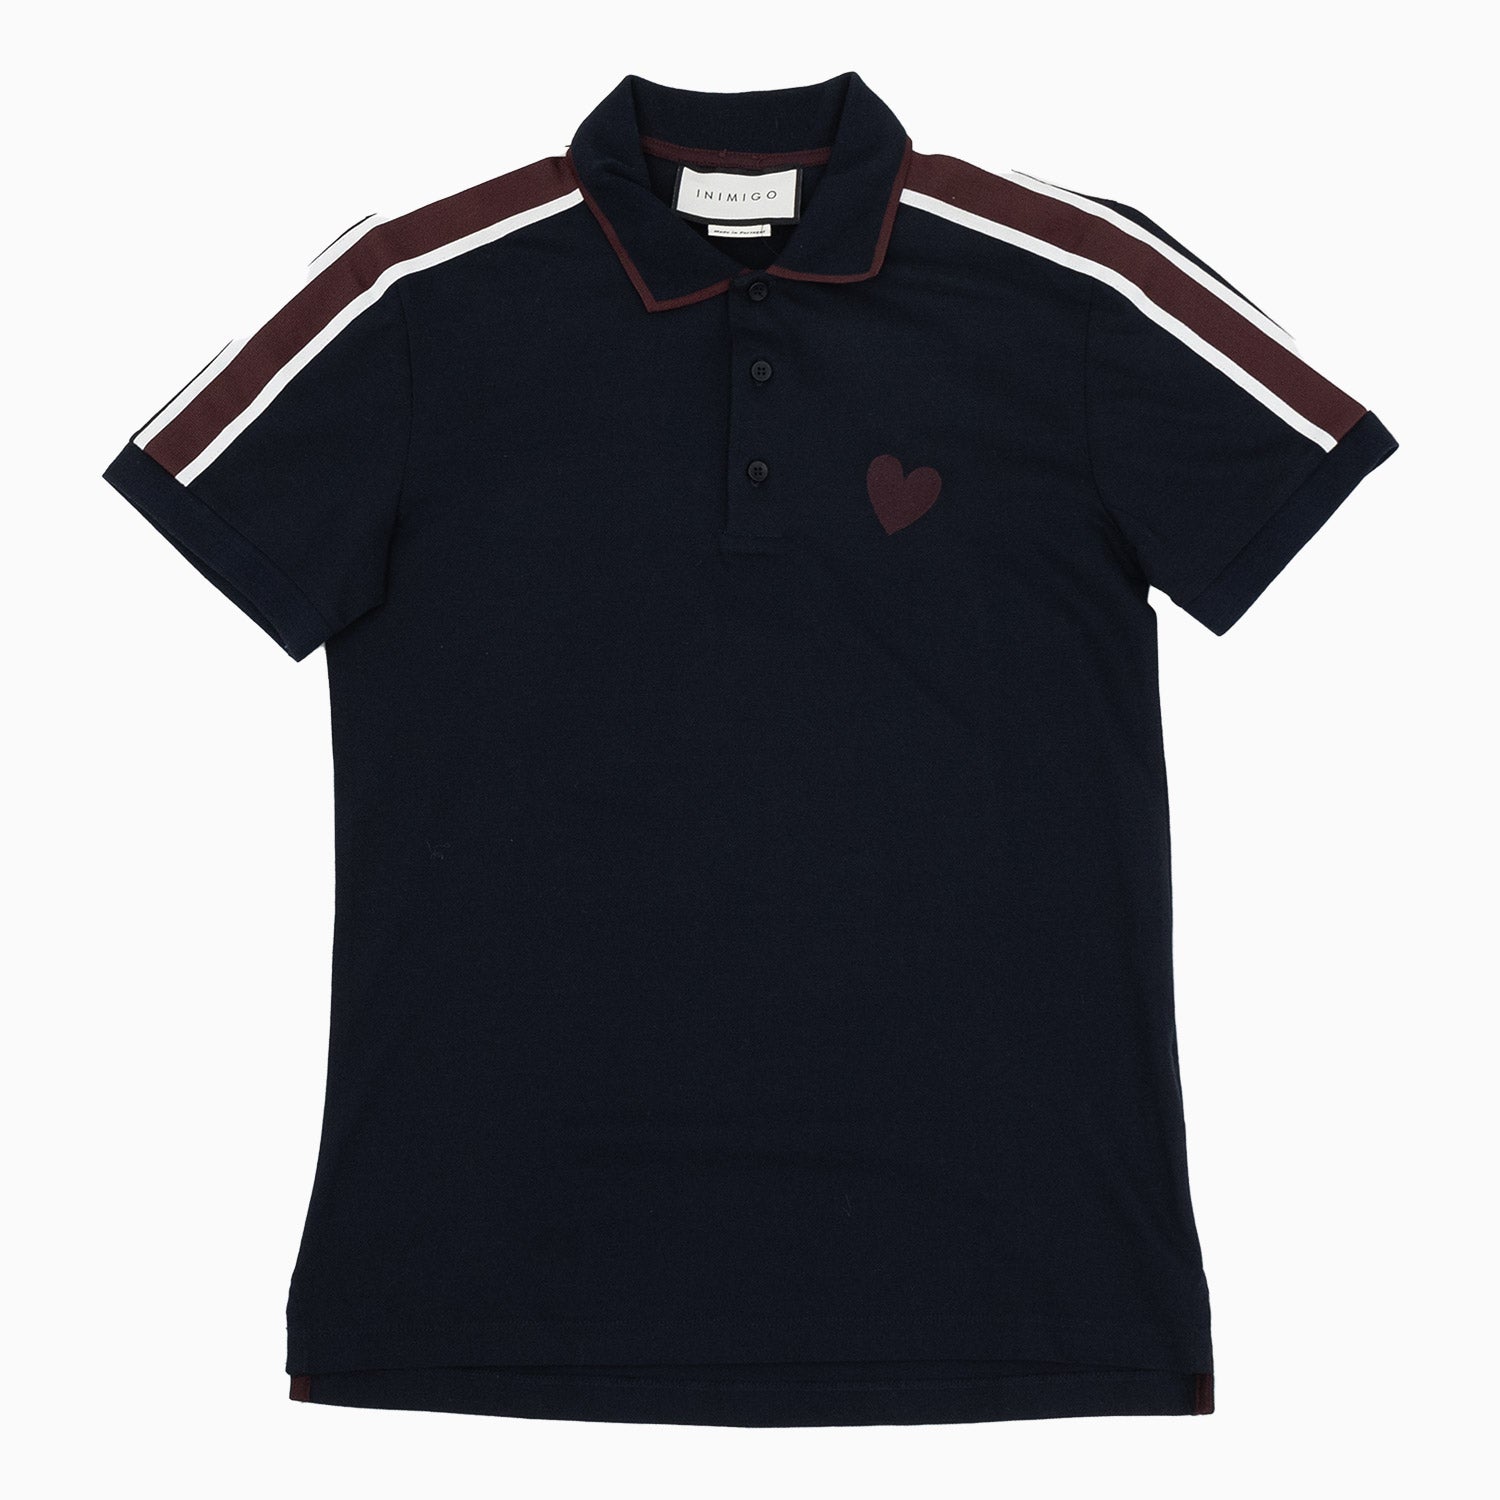 inimigo-mens-classic-strip-heart-polo-shirt-ipl2017-700